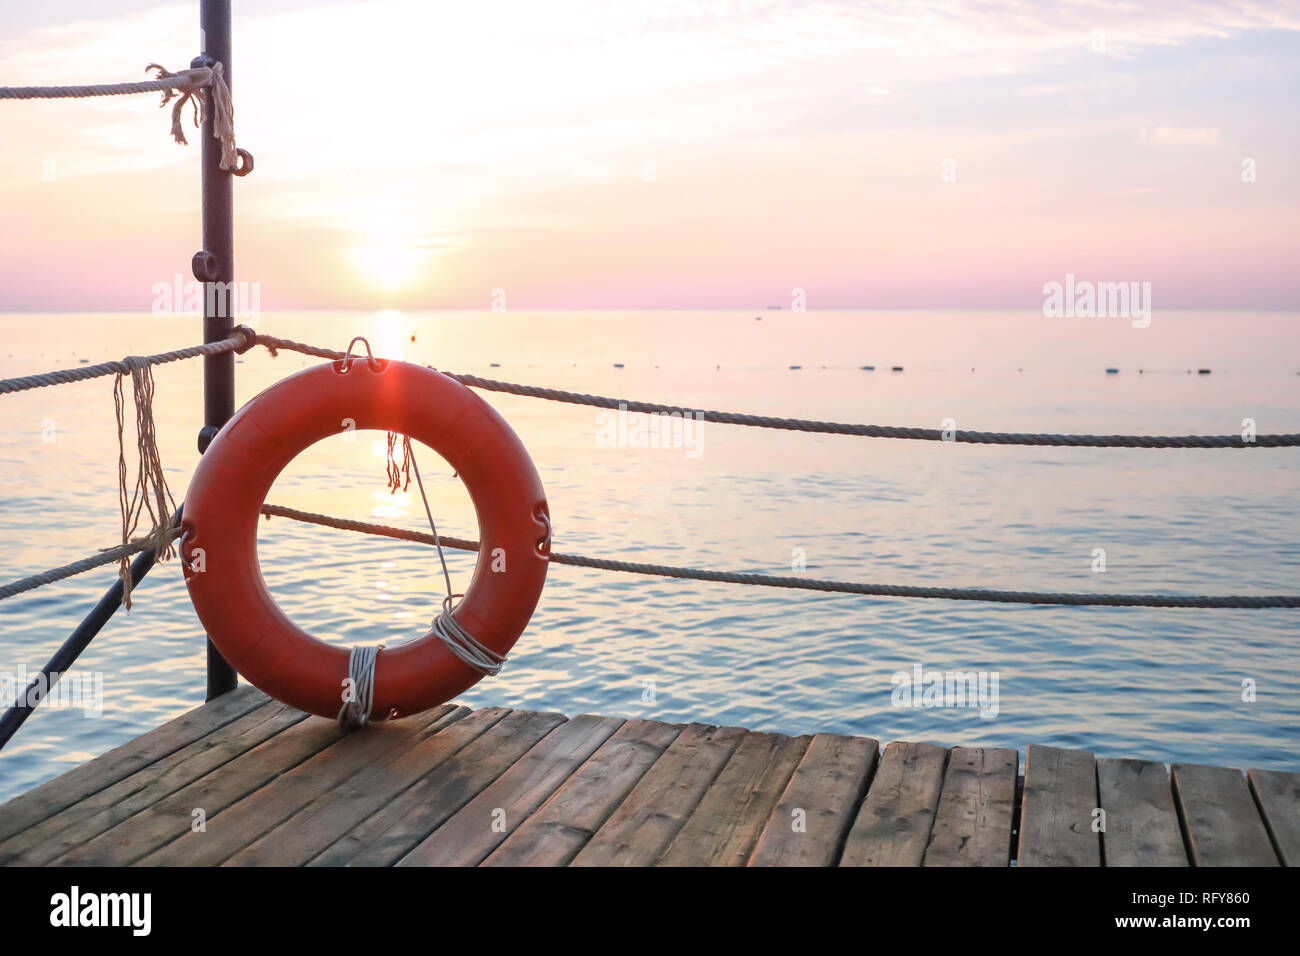 Lifebelt rosso sul molo in legno sullo sfondo di paesaggi marini all'alba. Foto Stock